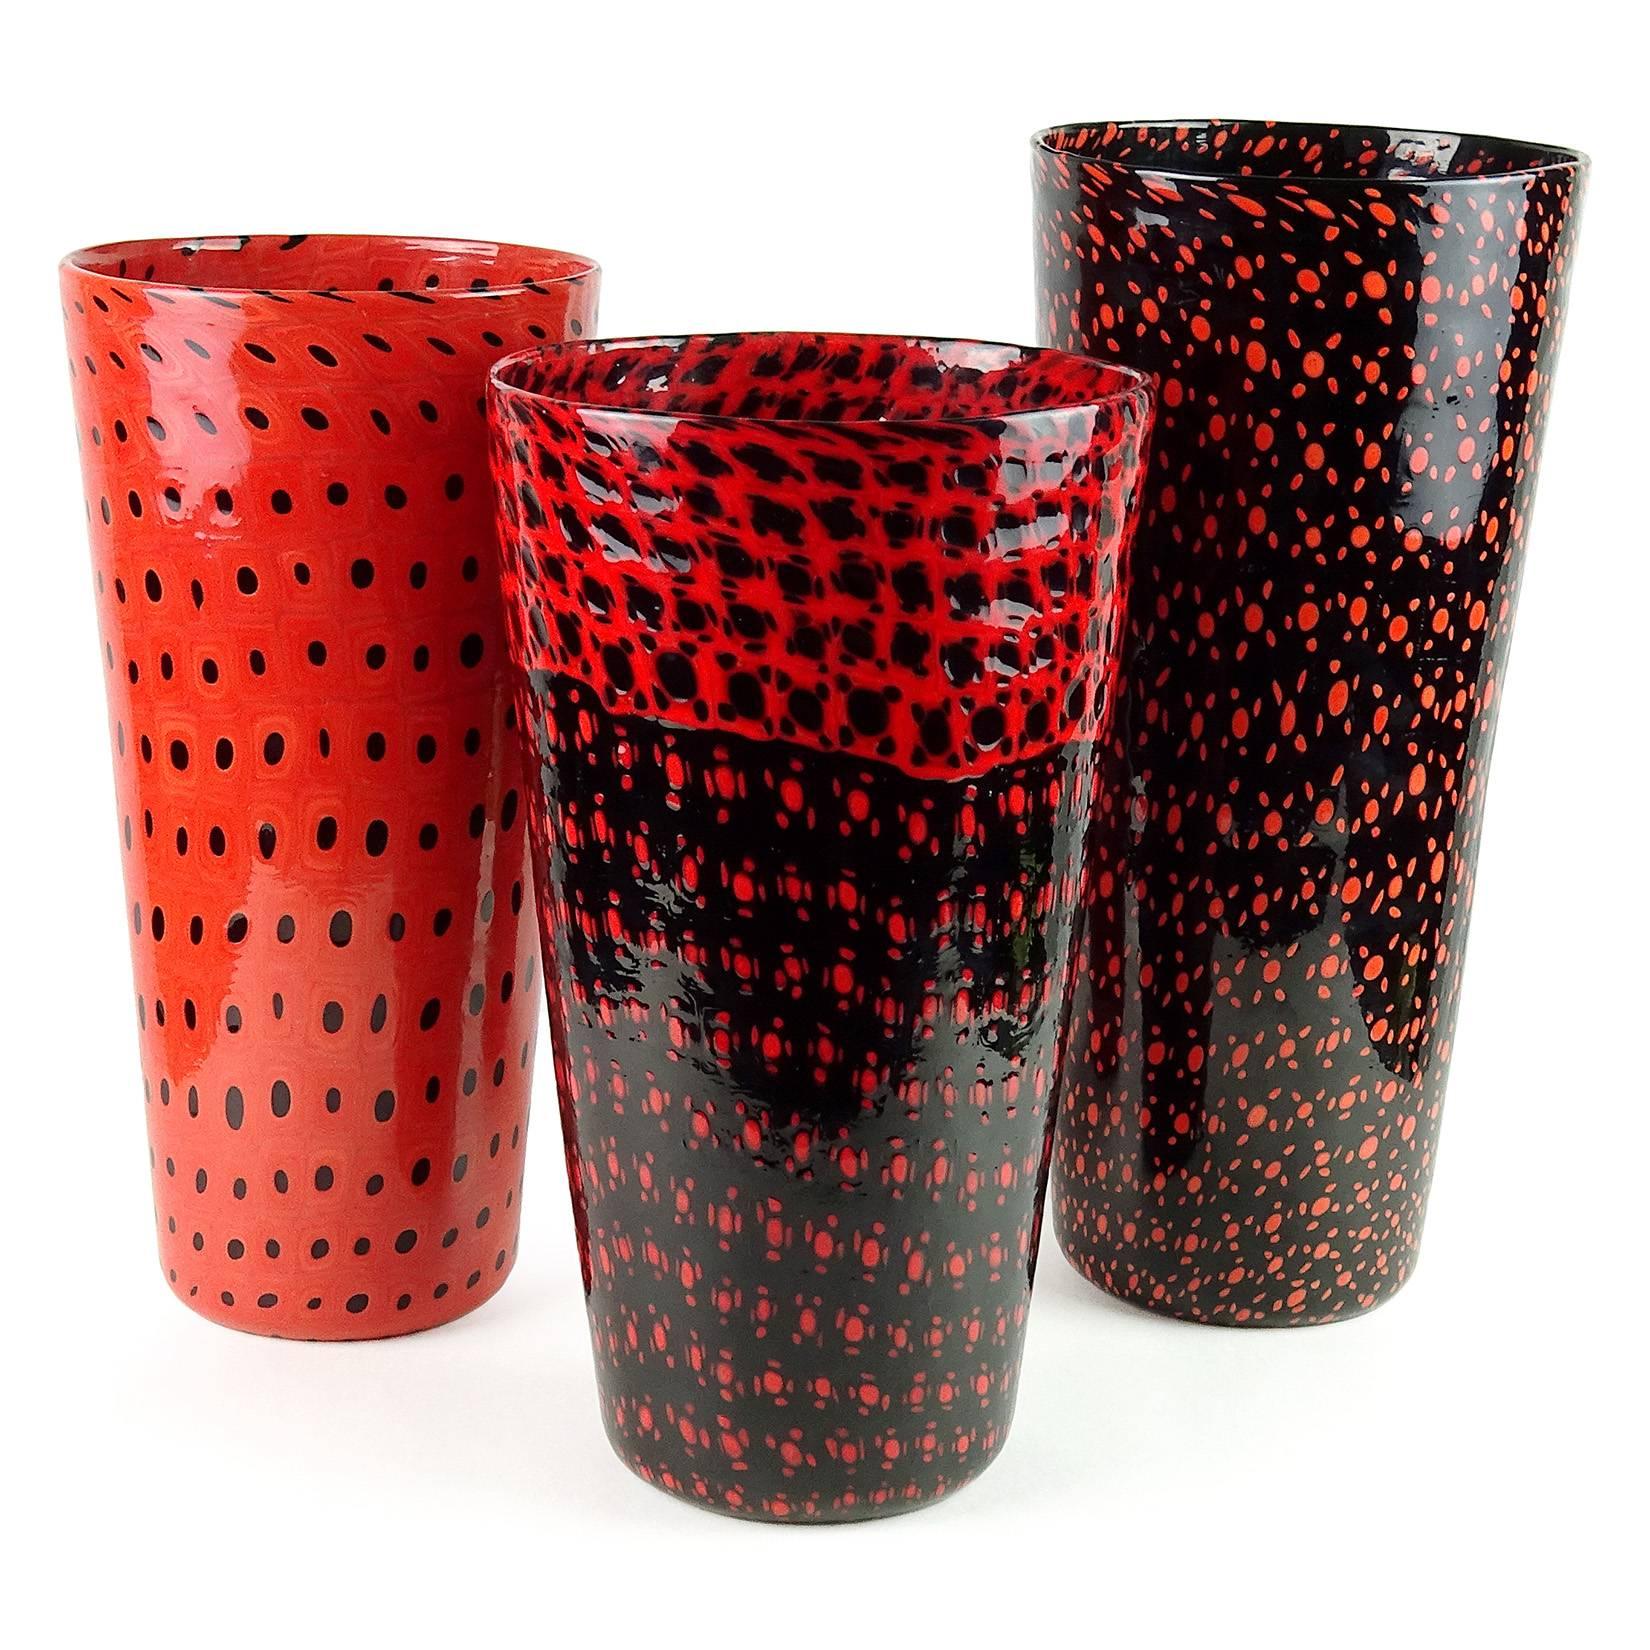 Hand-Crafted Vittorio Ferro Murano Black Red Murrines Italian Art Glass Flower Vase